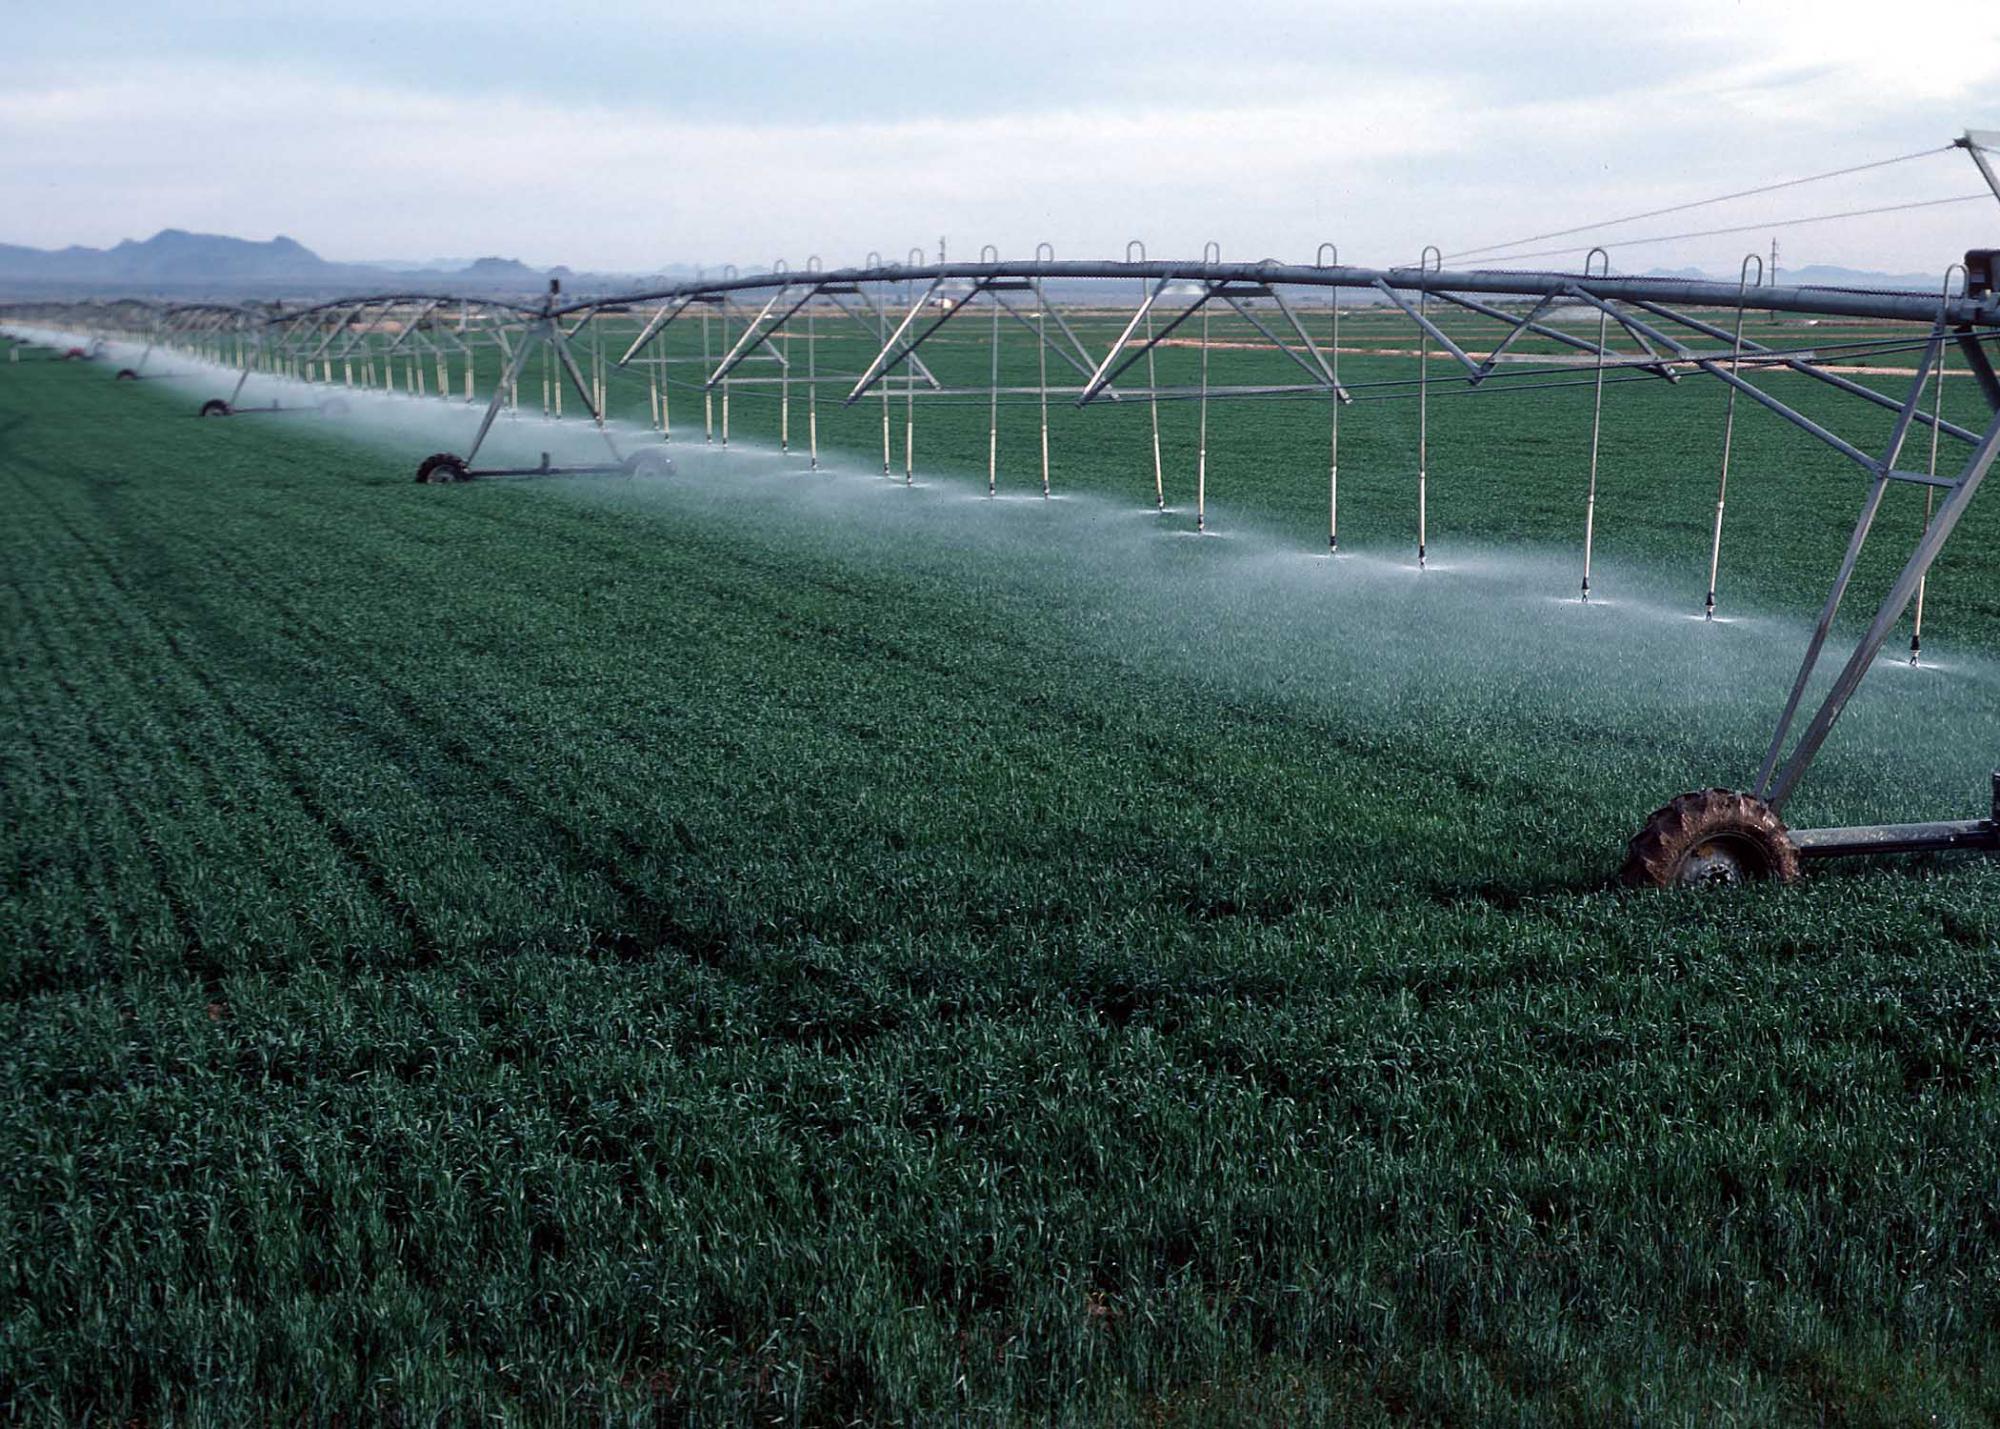 Pivot irrigation